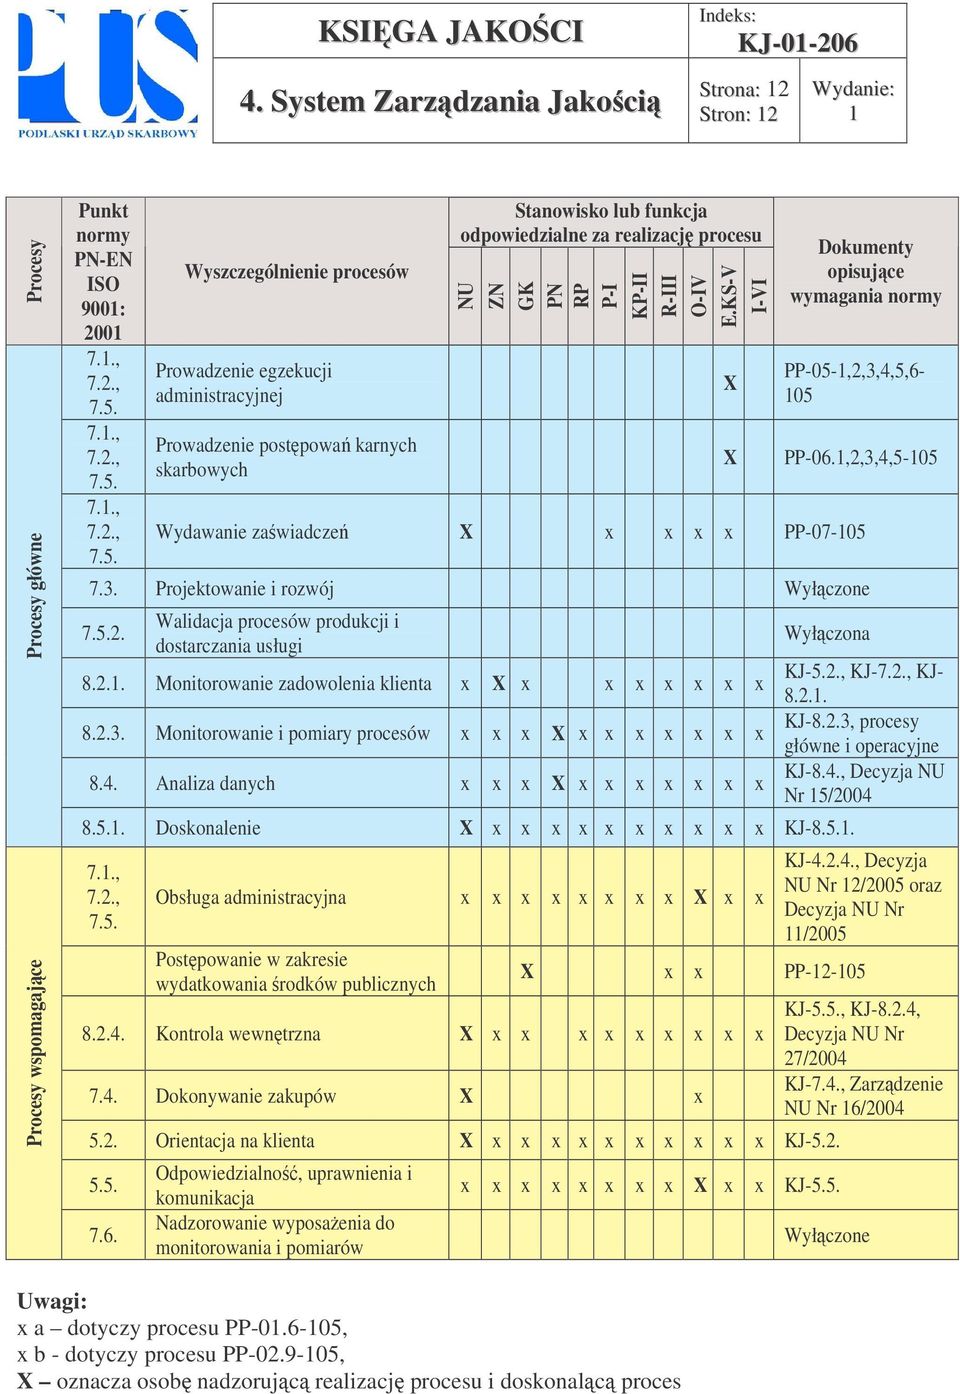 R-III O-IV E.KS-V I-VI Dokumenty opisujce wymagania normy PP-05-,2,3,4,5,6-05 PP-06.,2,3,4,5-05 Wydawanie zawiadcze x x x x PP-07-05 7.3. Projektowanie i rozwój Wyłczone 2.